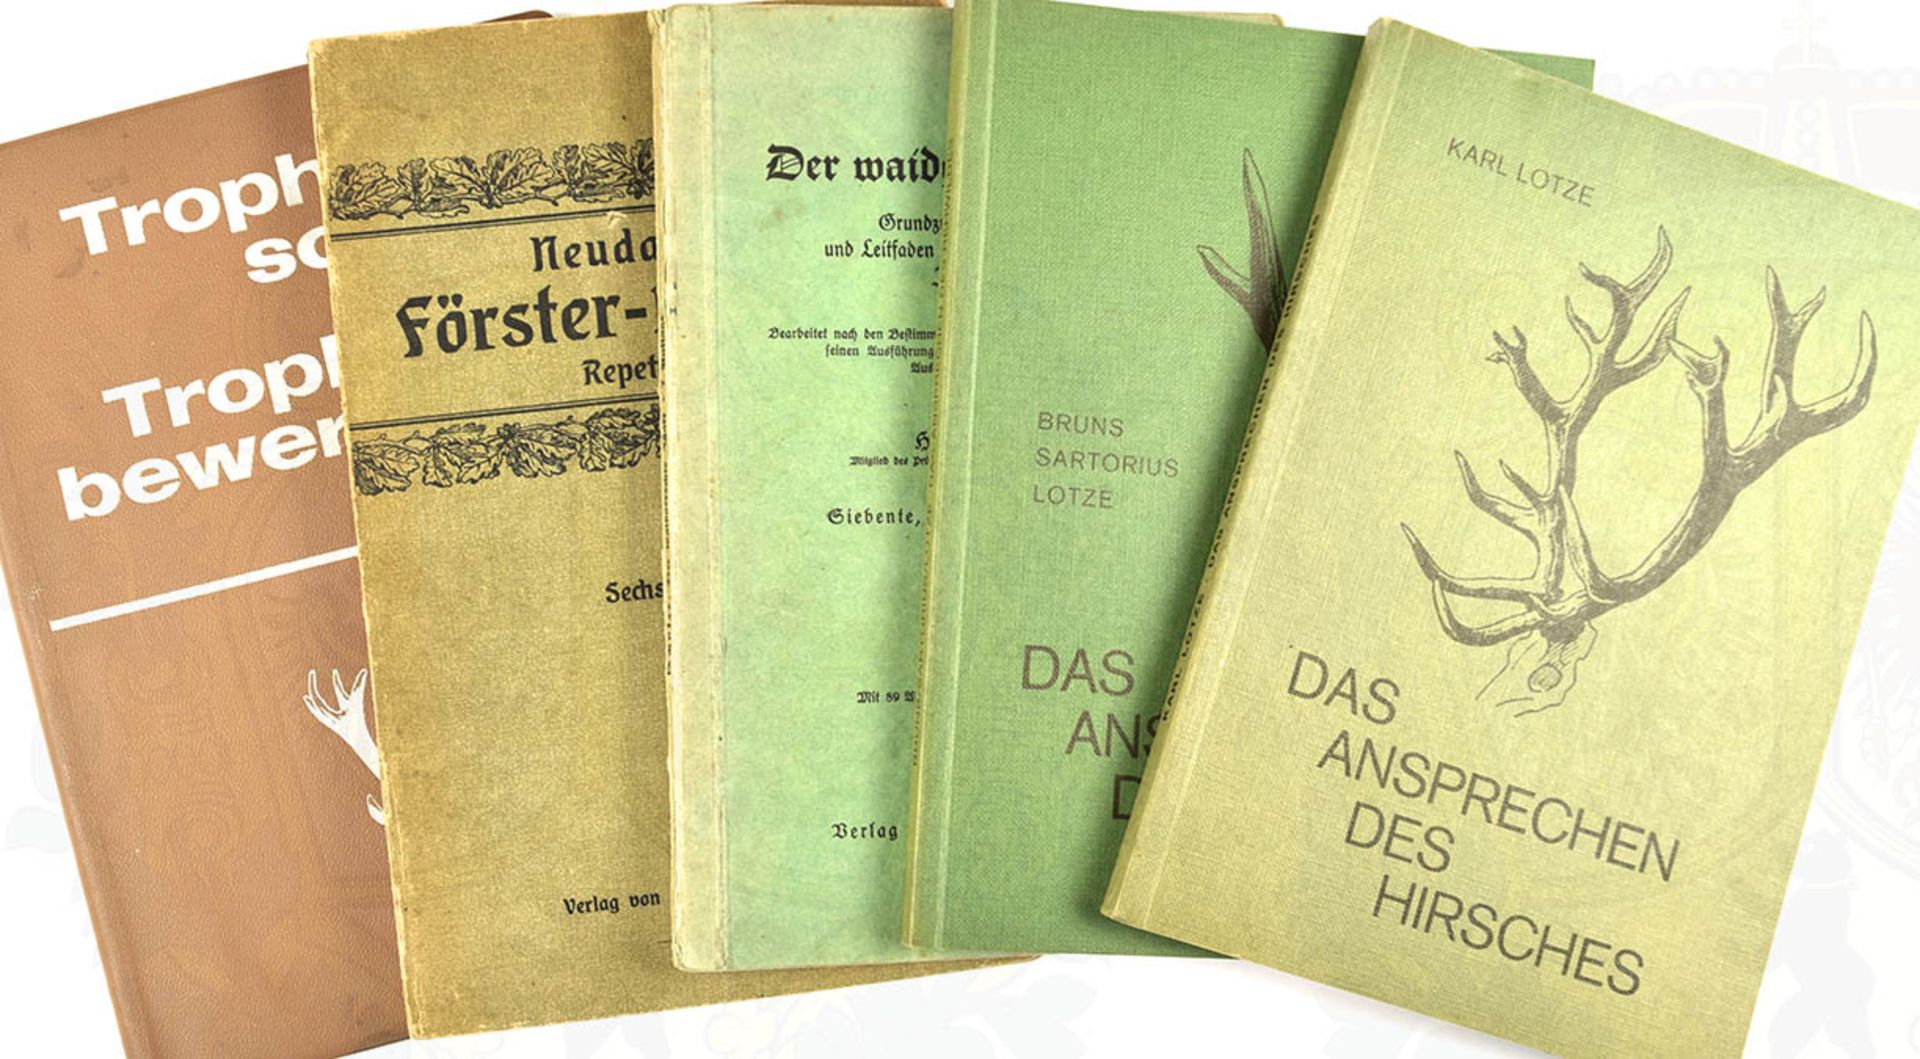 5 TITEL: Der waidgerechte Jäger, 1942; Repetitorium z. Neudammer Förster-Lehrbuch, 1919; Das